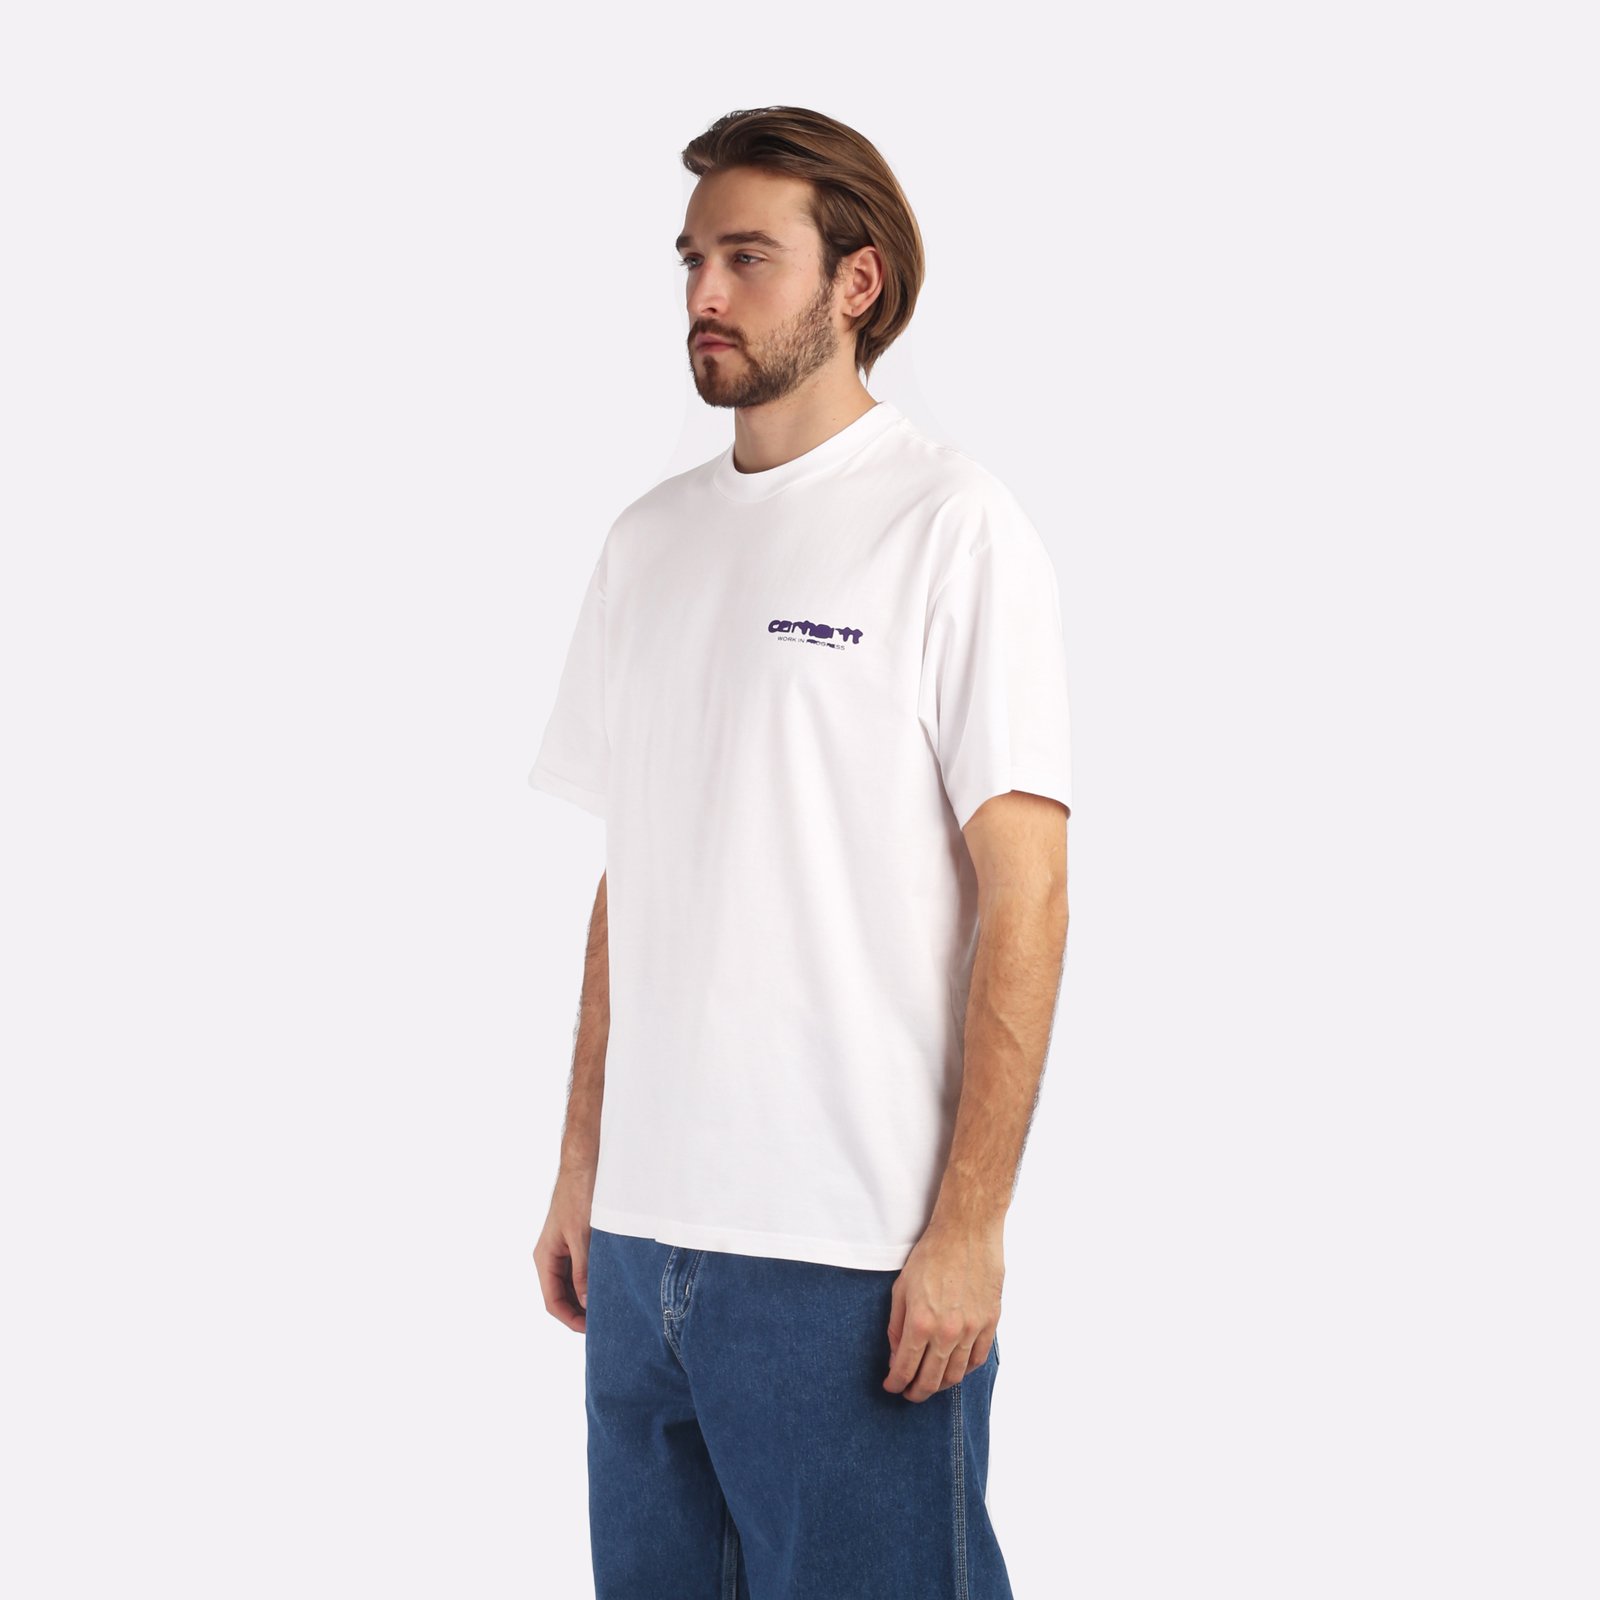 мужская белая футболка Carhartt WIP S/S Ink Bleed T-Shirt I032878-white/tyrian - цена, описание, фото 3